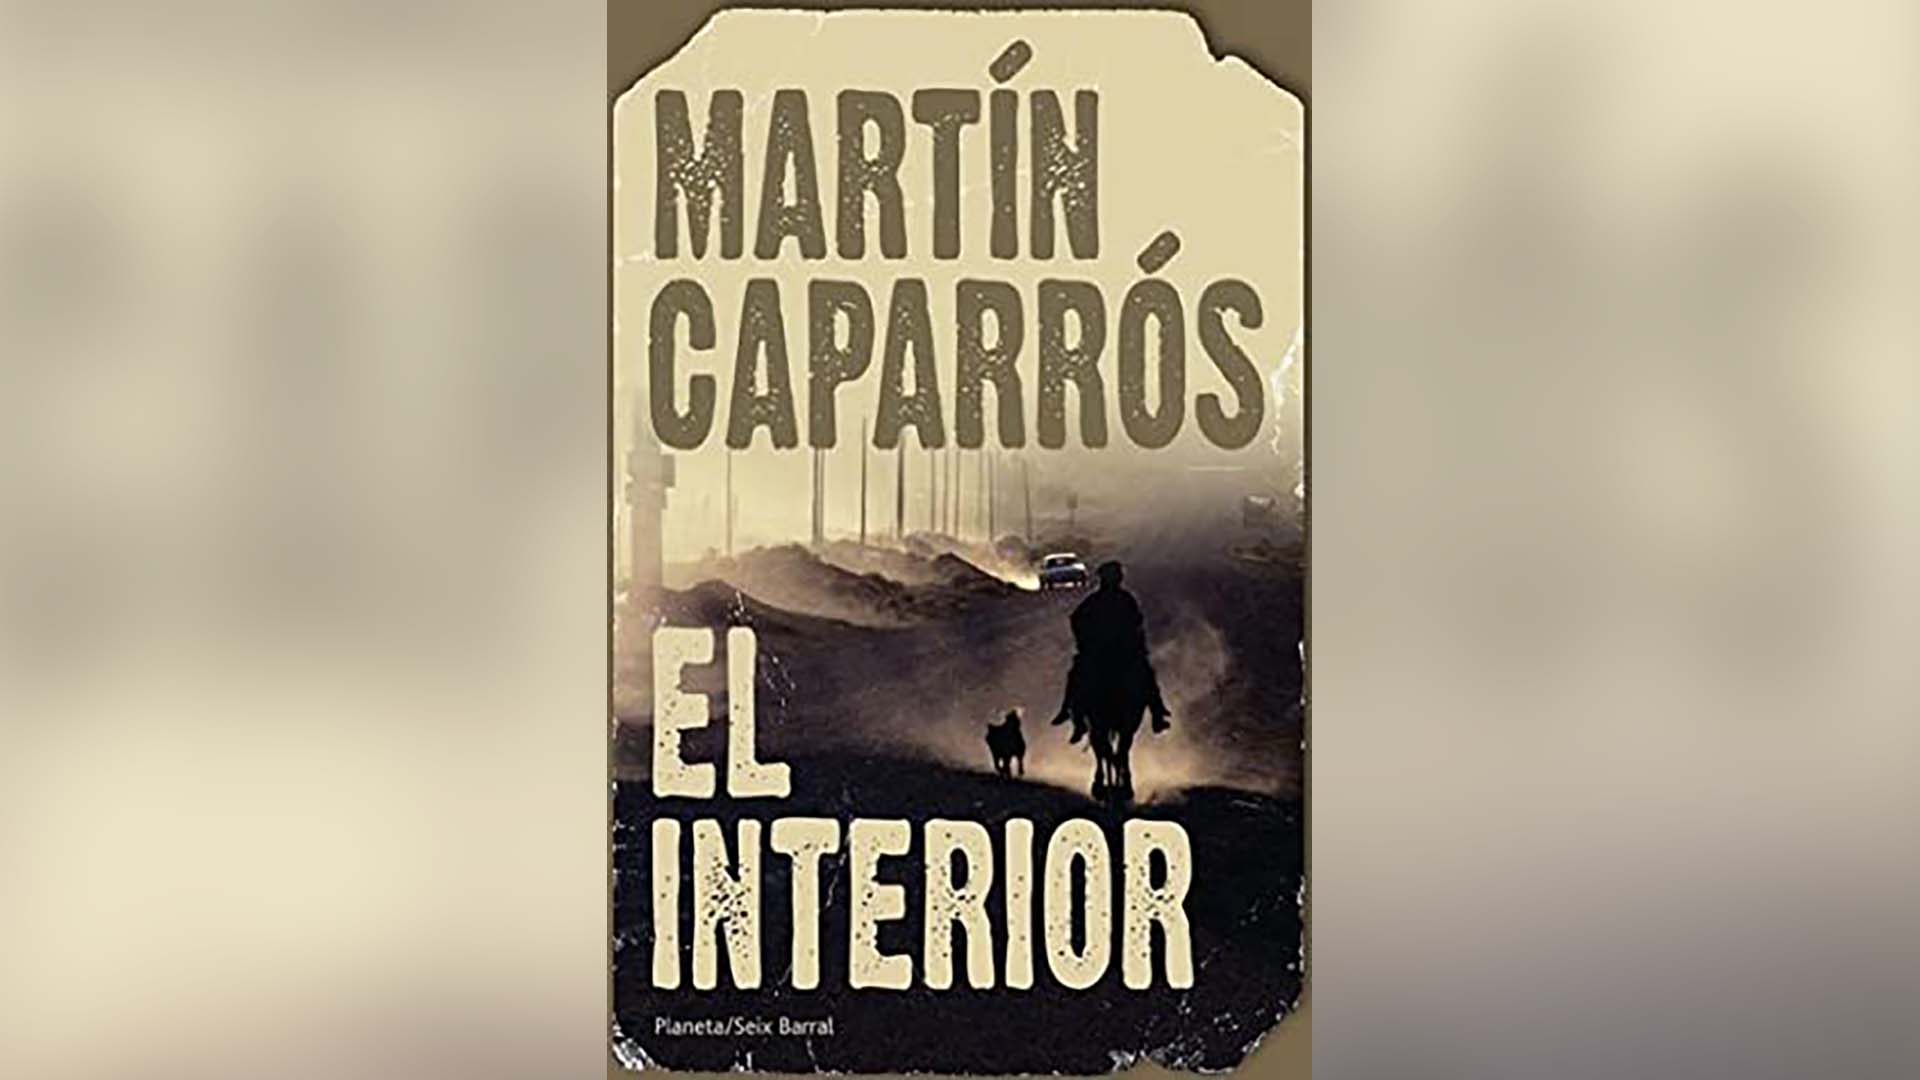 "El interior", de Martín Caparrós, publicado por Editorial Planeta/Seix Barral